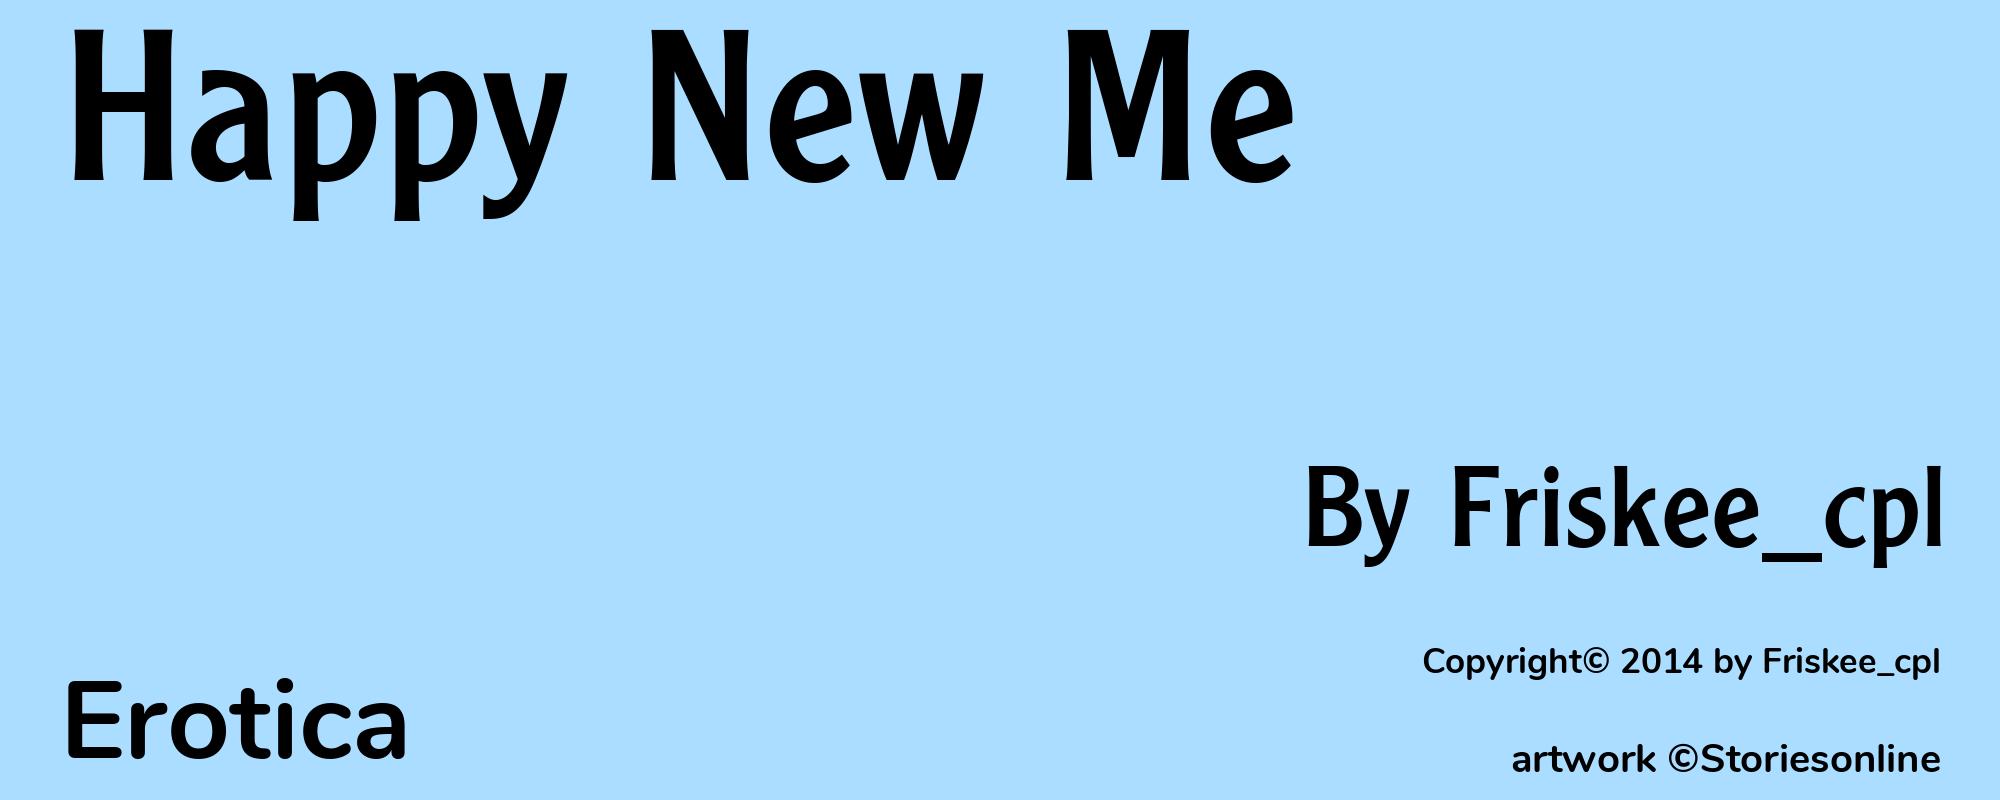 Happy New Me - Cover